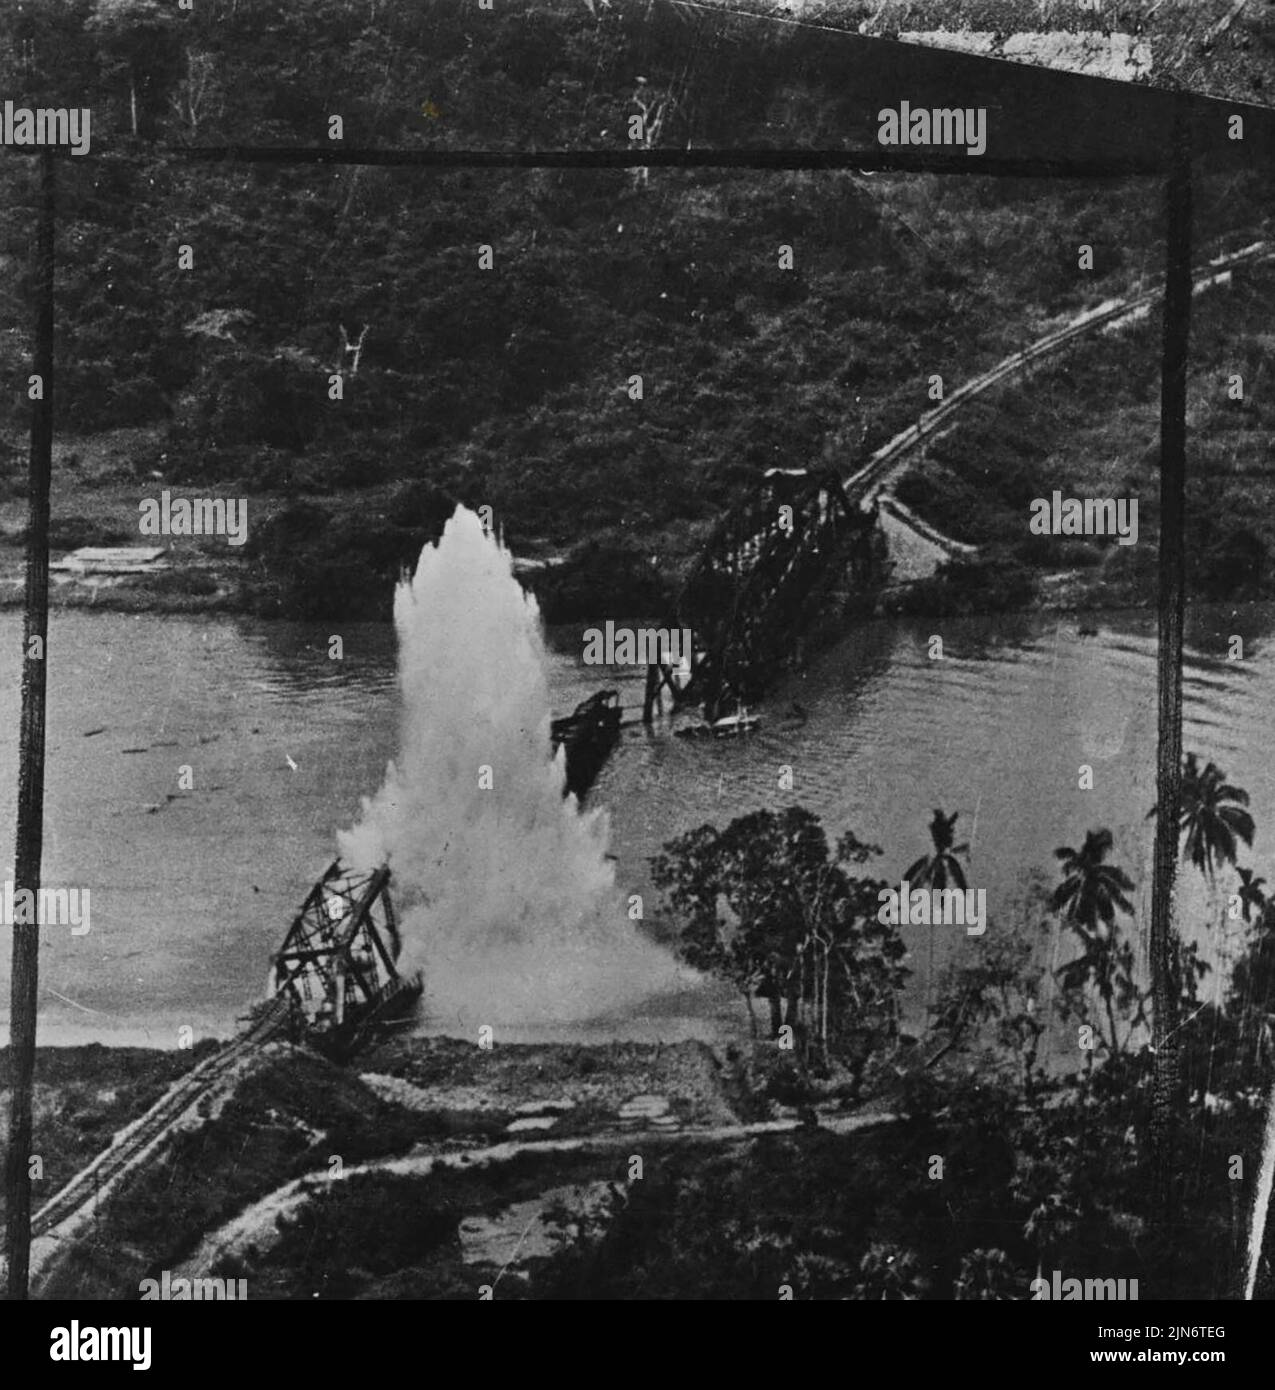 Una fotografia obliqua di basso livello presa da uno dei R.A.F. attaccanti Liberatori, mostra una bomba che esplode al centro del bridge.R.A.F. Heavies Sciopero in Malaya: In un viaggio di andata e ritorno di quasi 2.500 miglia dalle basi in India, R.A.F. I liberatori delle forze aeree strategiche, Eastern Air Command, hanno battuto un ponte di 600 piedi a tre campate a Ban-Tam-Kam, sulla ferrovia Bangkok-Singapore. Il ponte, 600 miglia a nord di Singapore, era stato colpito in precedenza, ma il nuovo sciopero lo ha demolito - negando al nemico l'uso di un collegamento di approvvigionamento vitale per i loro eserciti che resistono nella bassa Birmania e nel Siam. Luglio 09, 1945. Foto Stock